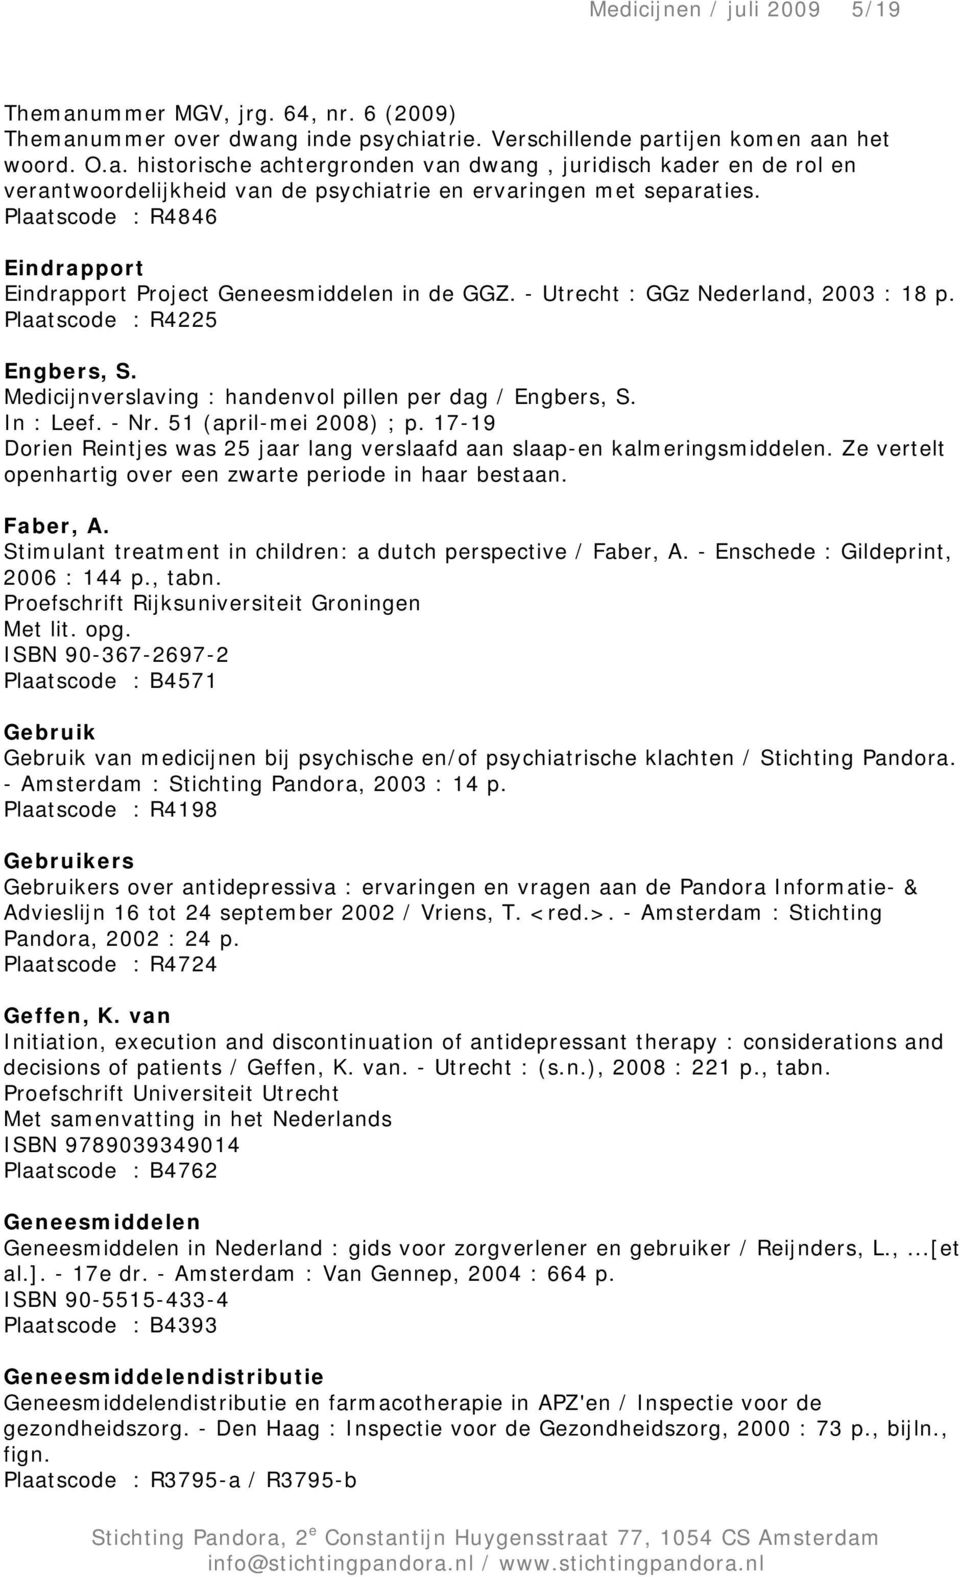 Medicijnverslaving : handenvol pillen per dag / Engbers, S. In : Leef. - Nr. 51 (april-mei 2008) ; p. 17-19 Dorien Reintjes was 25 jaar lang verslaafd aan slaap-en kalmeringsmiddelen.